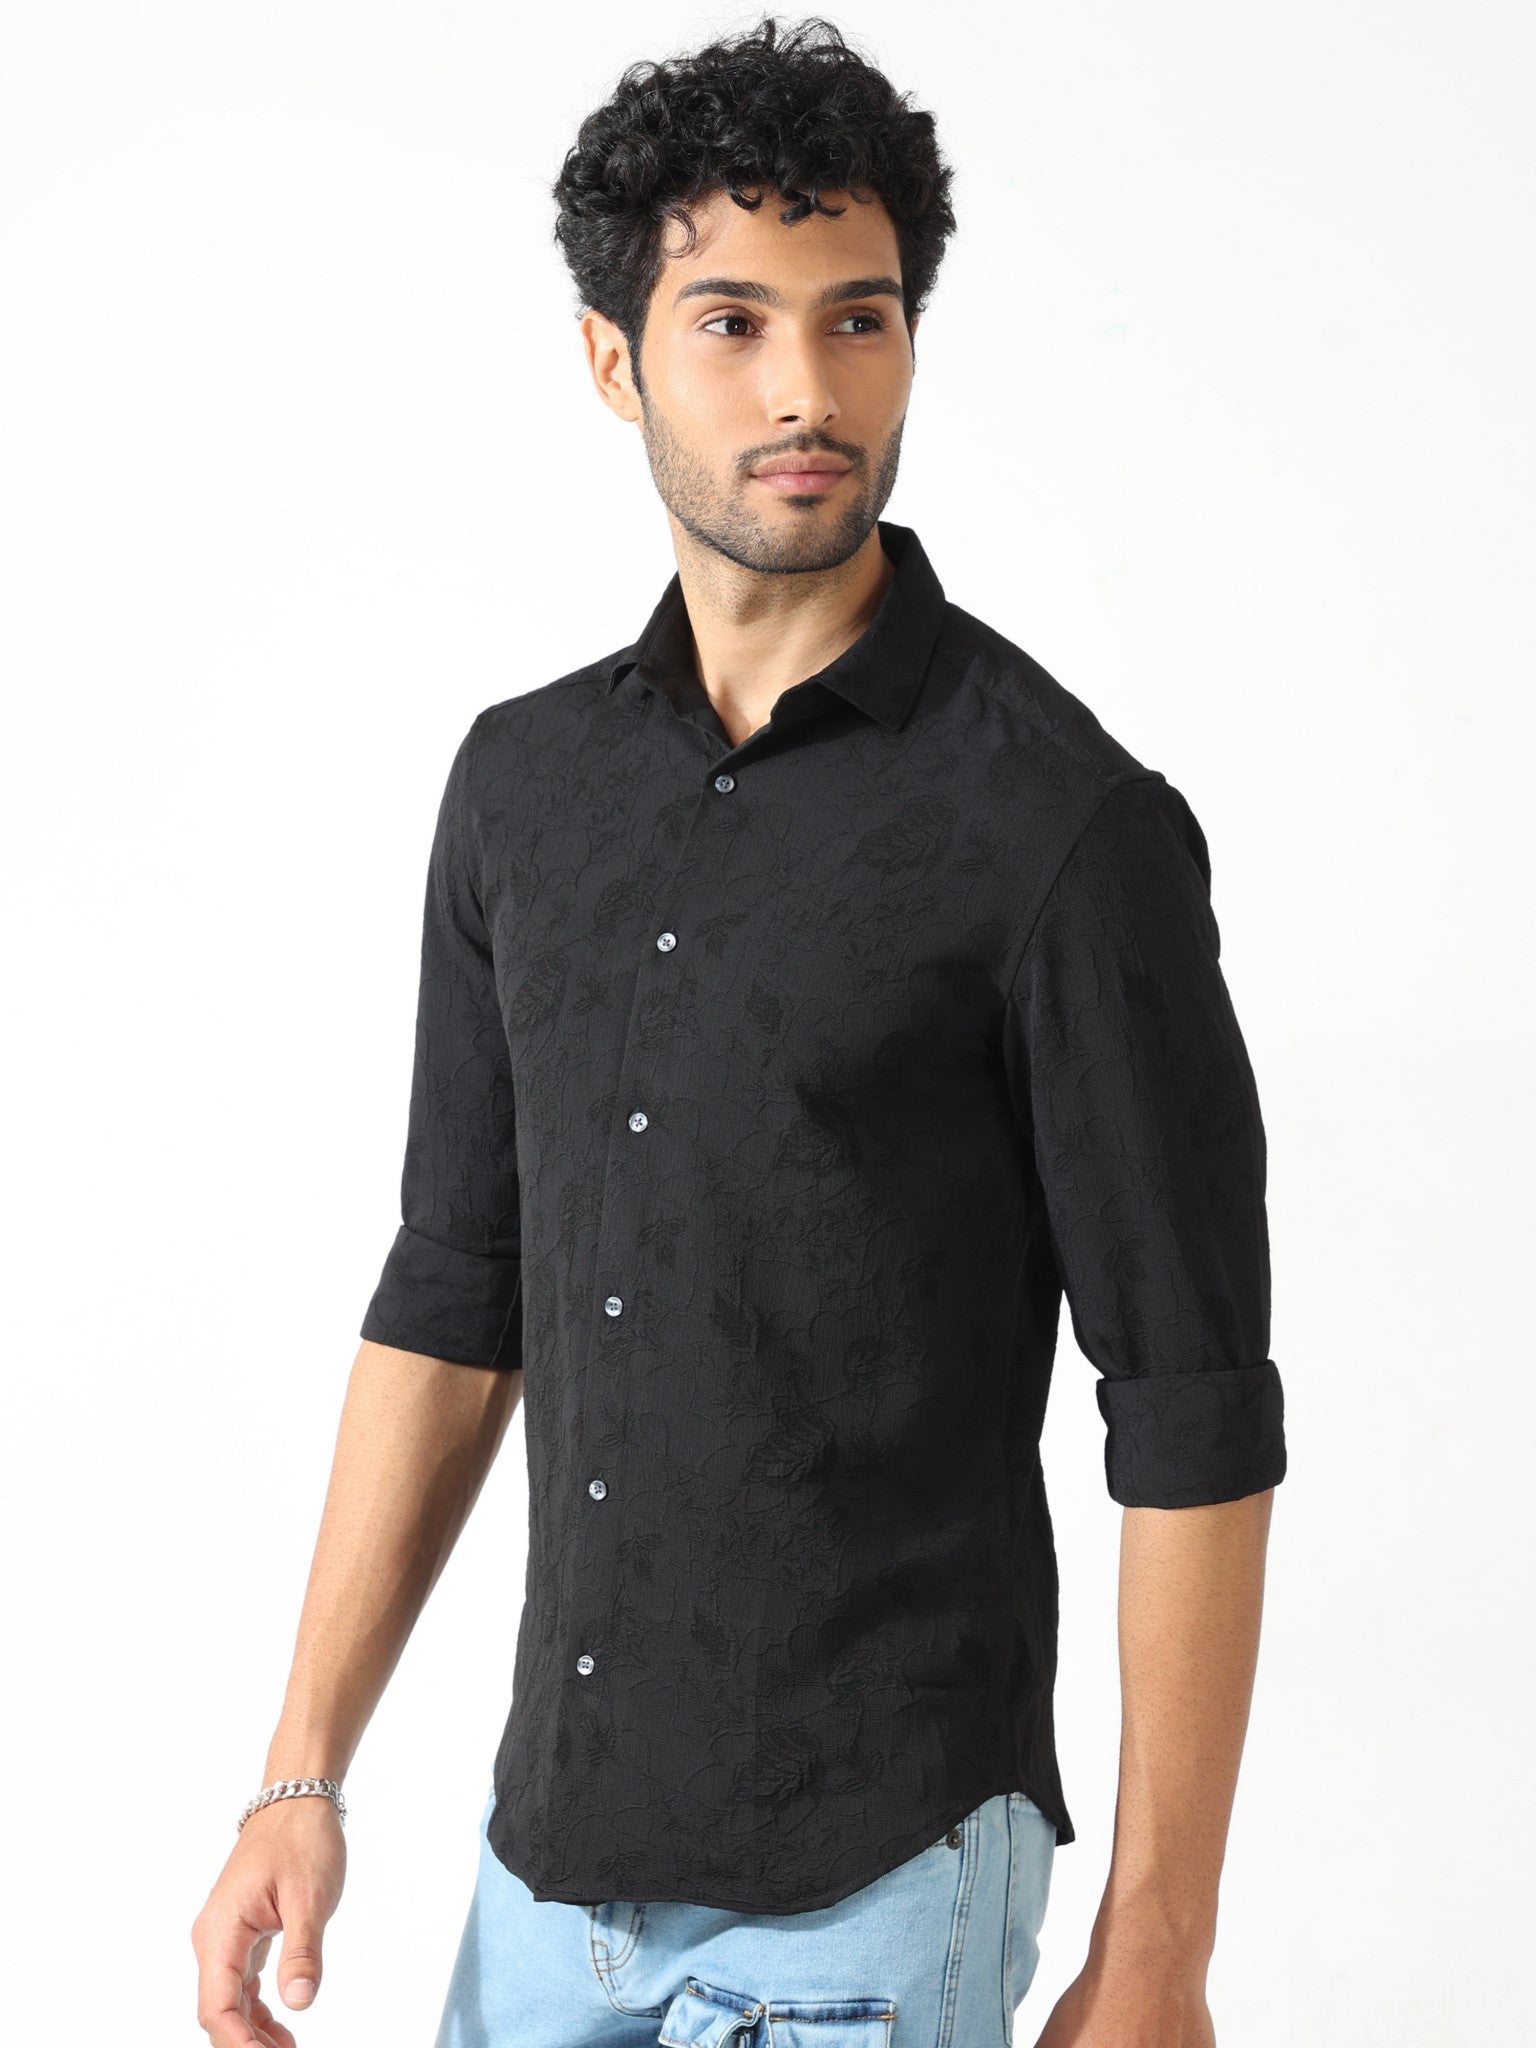 Abstract Jacquard Black Shirt